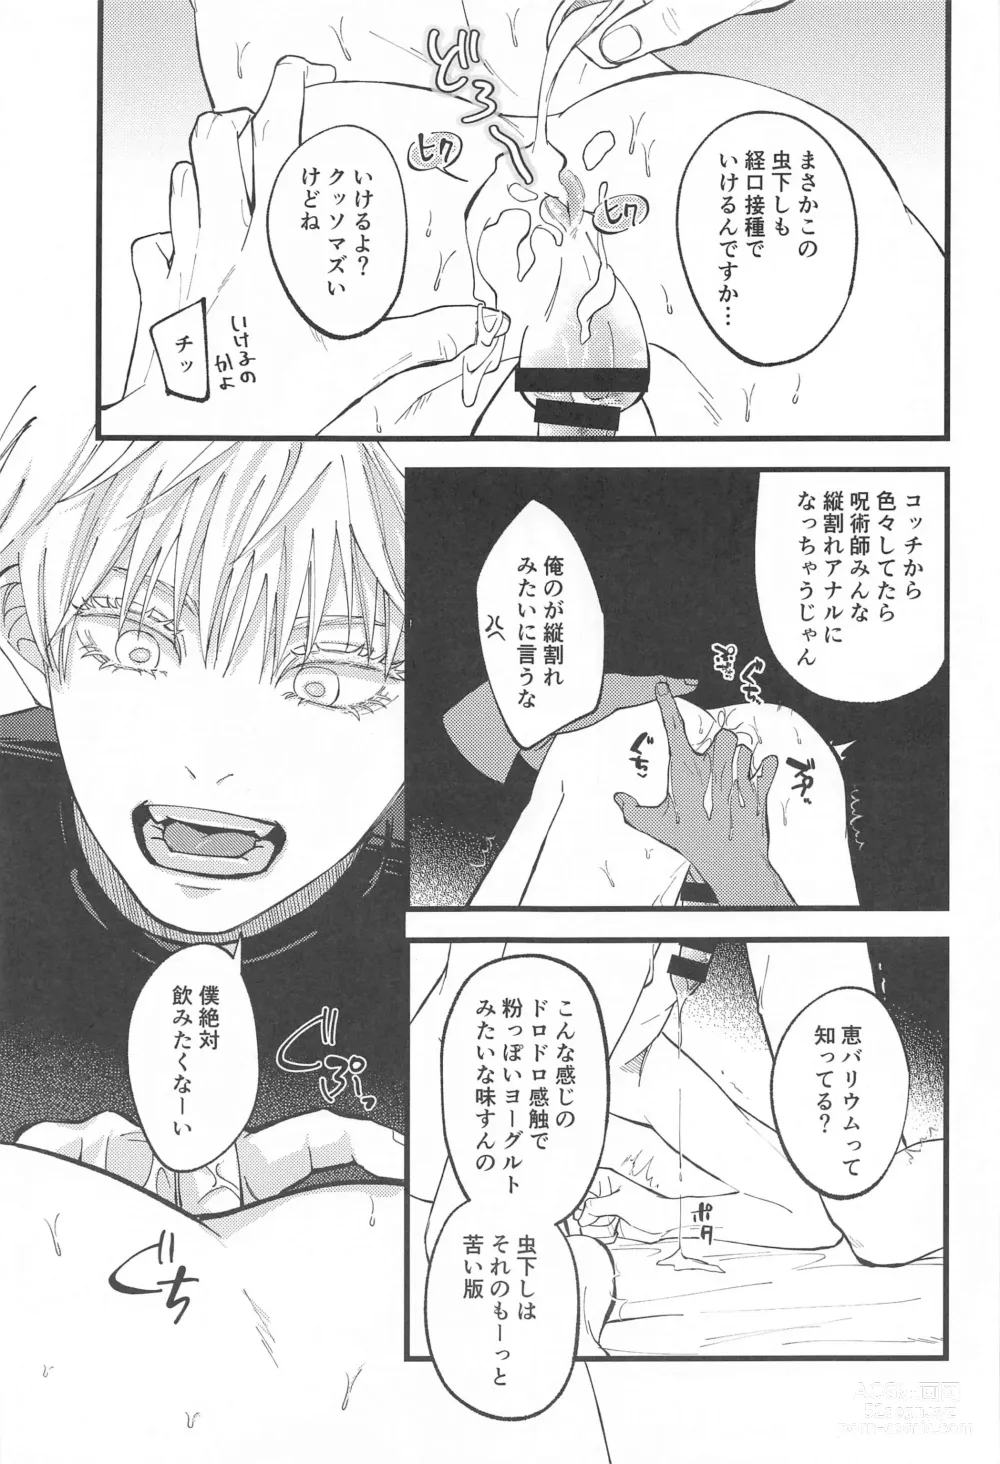 Page 16 of doujinshi Hara no Mushi ga Osamaranai!